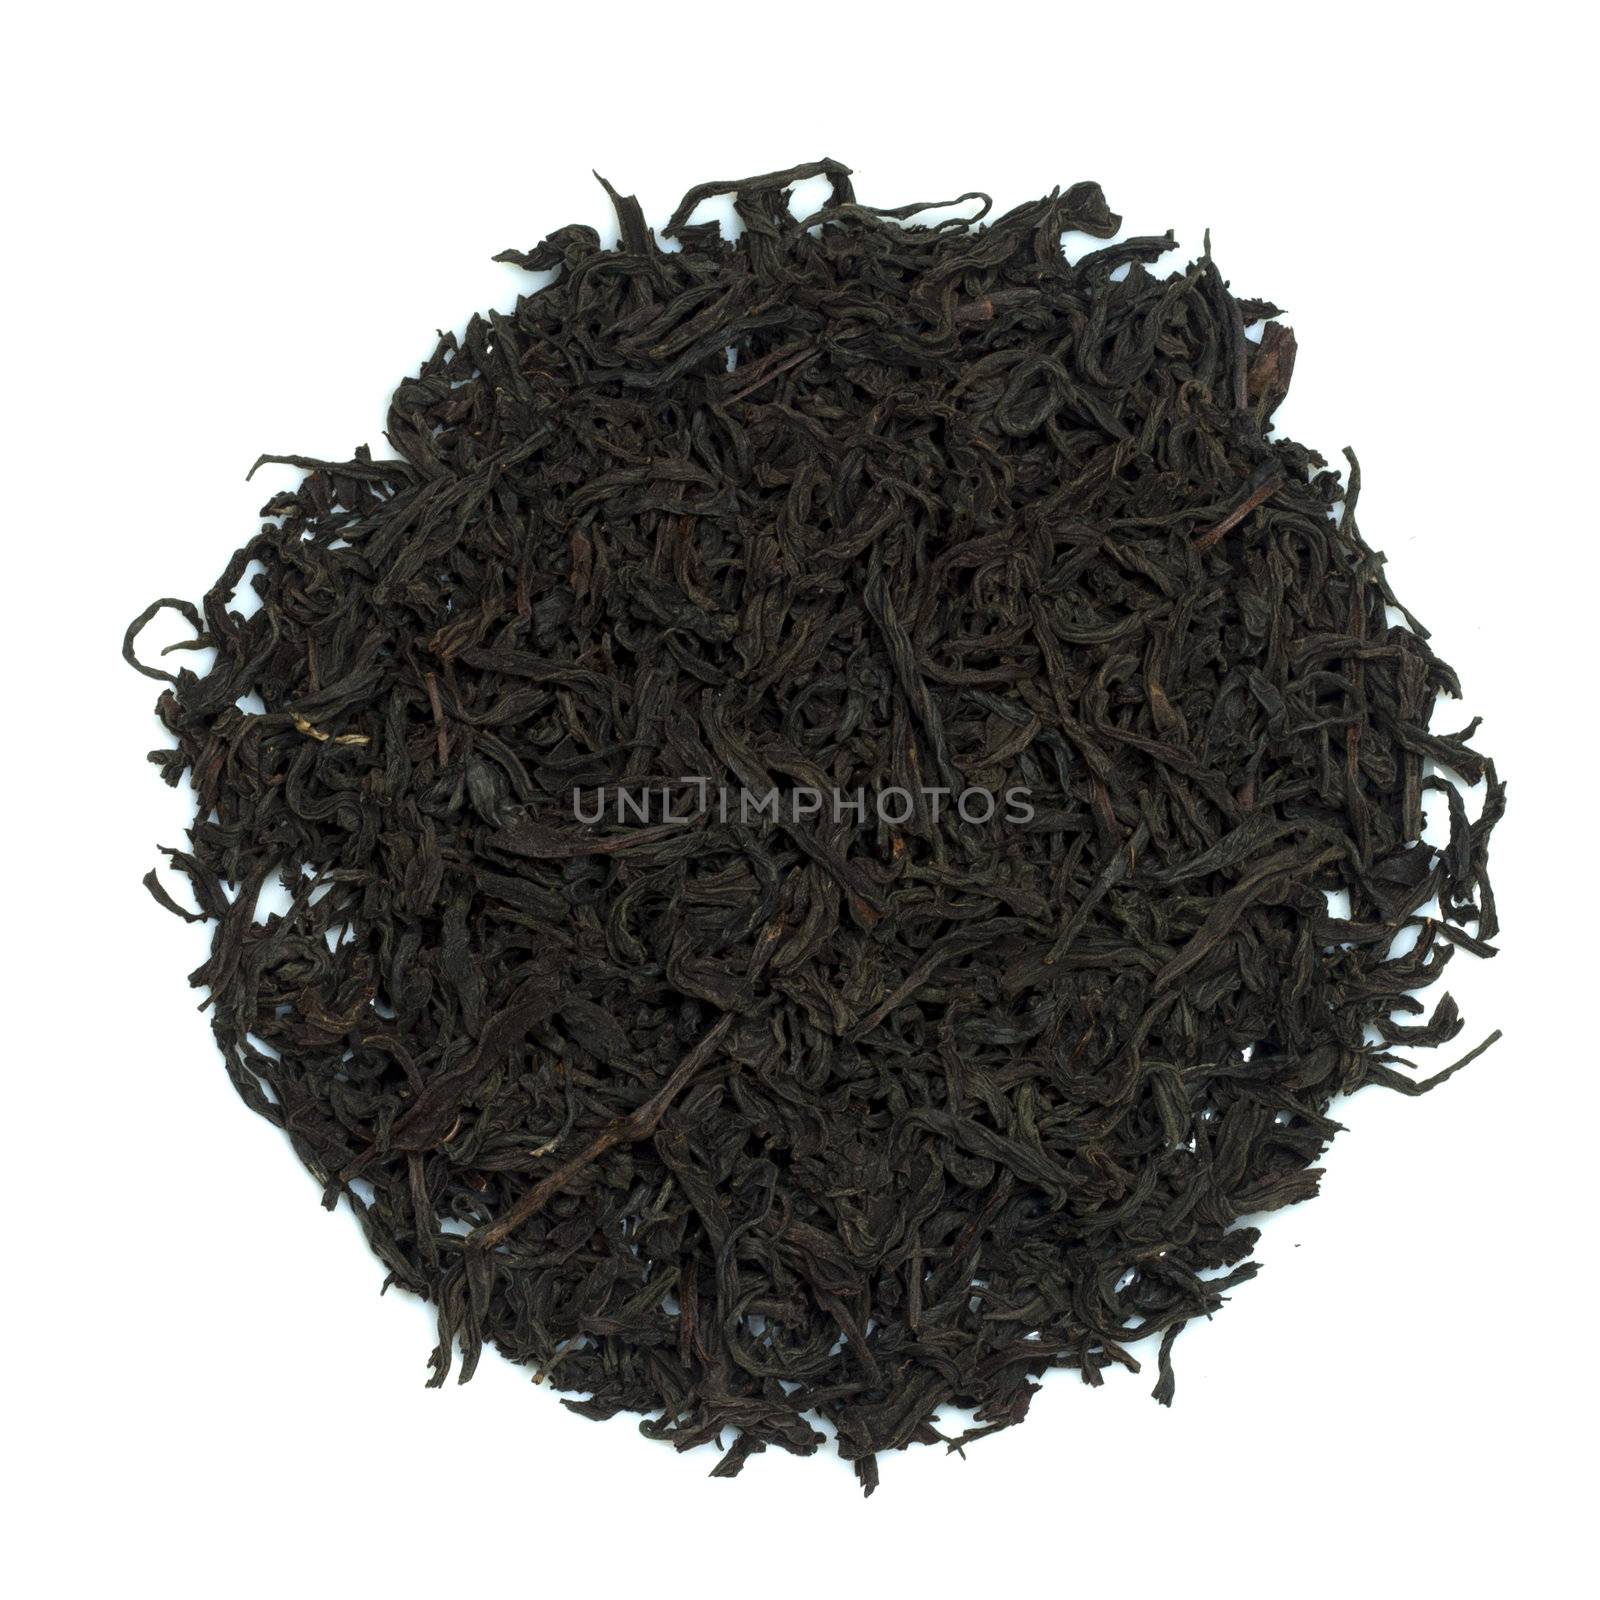 black tea on a white background 